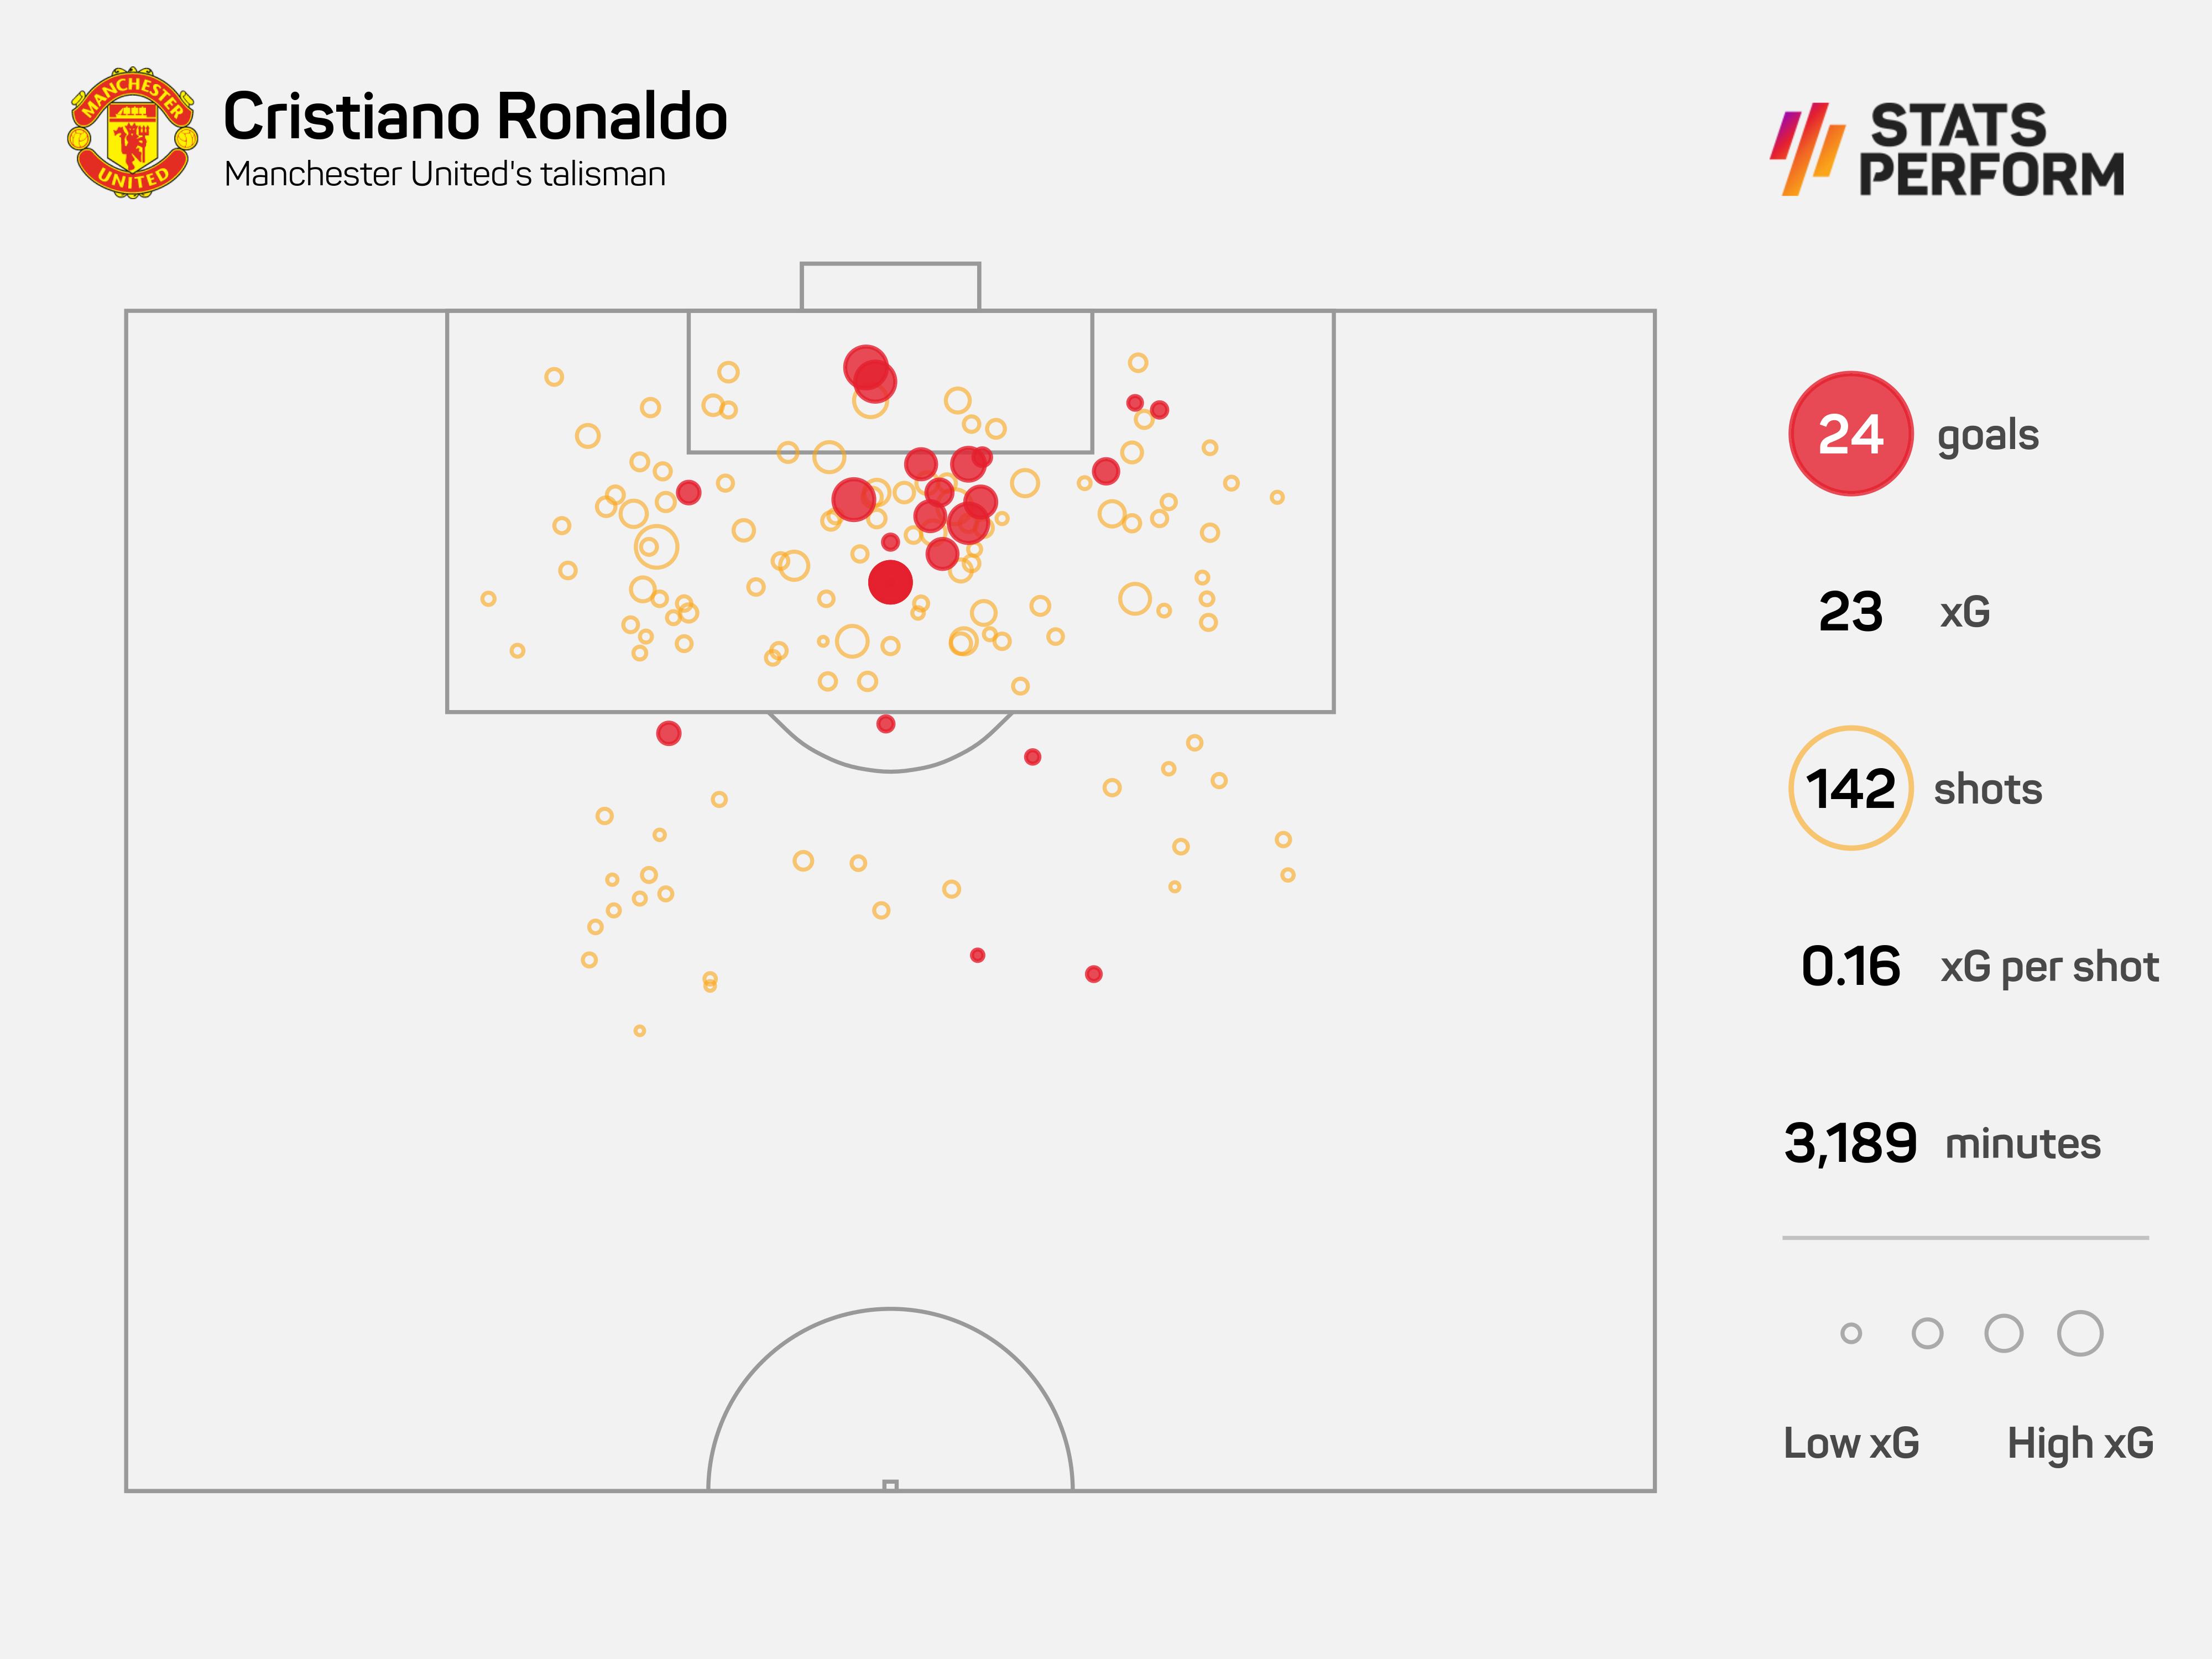 Cristiano Ronaldo scored 24 goals in all competitions last season